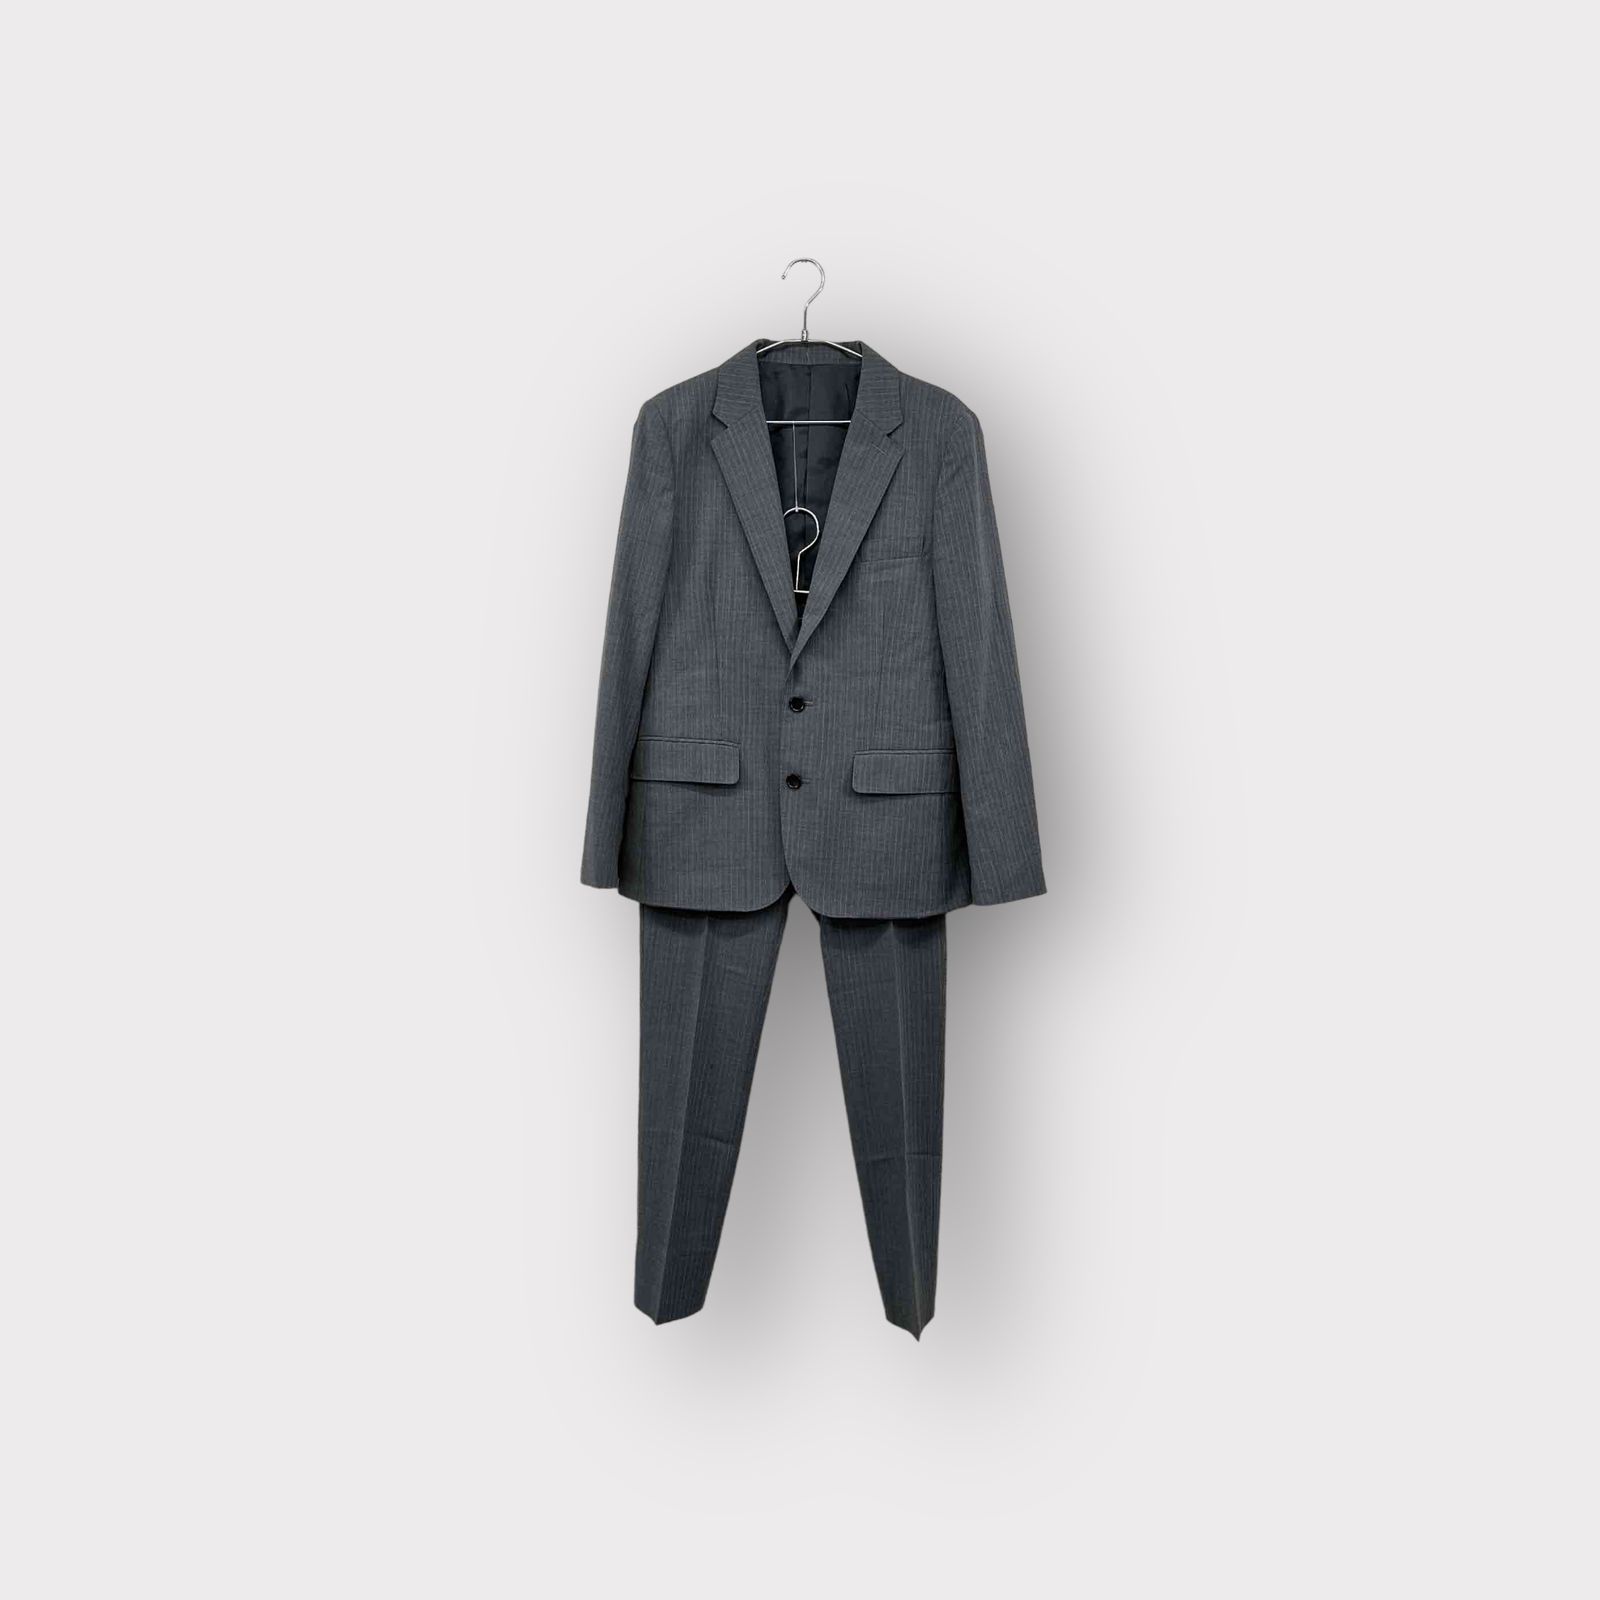 公式サイトから購入する テーラードジャケット スーツ46サイズ | www